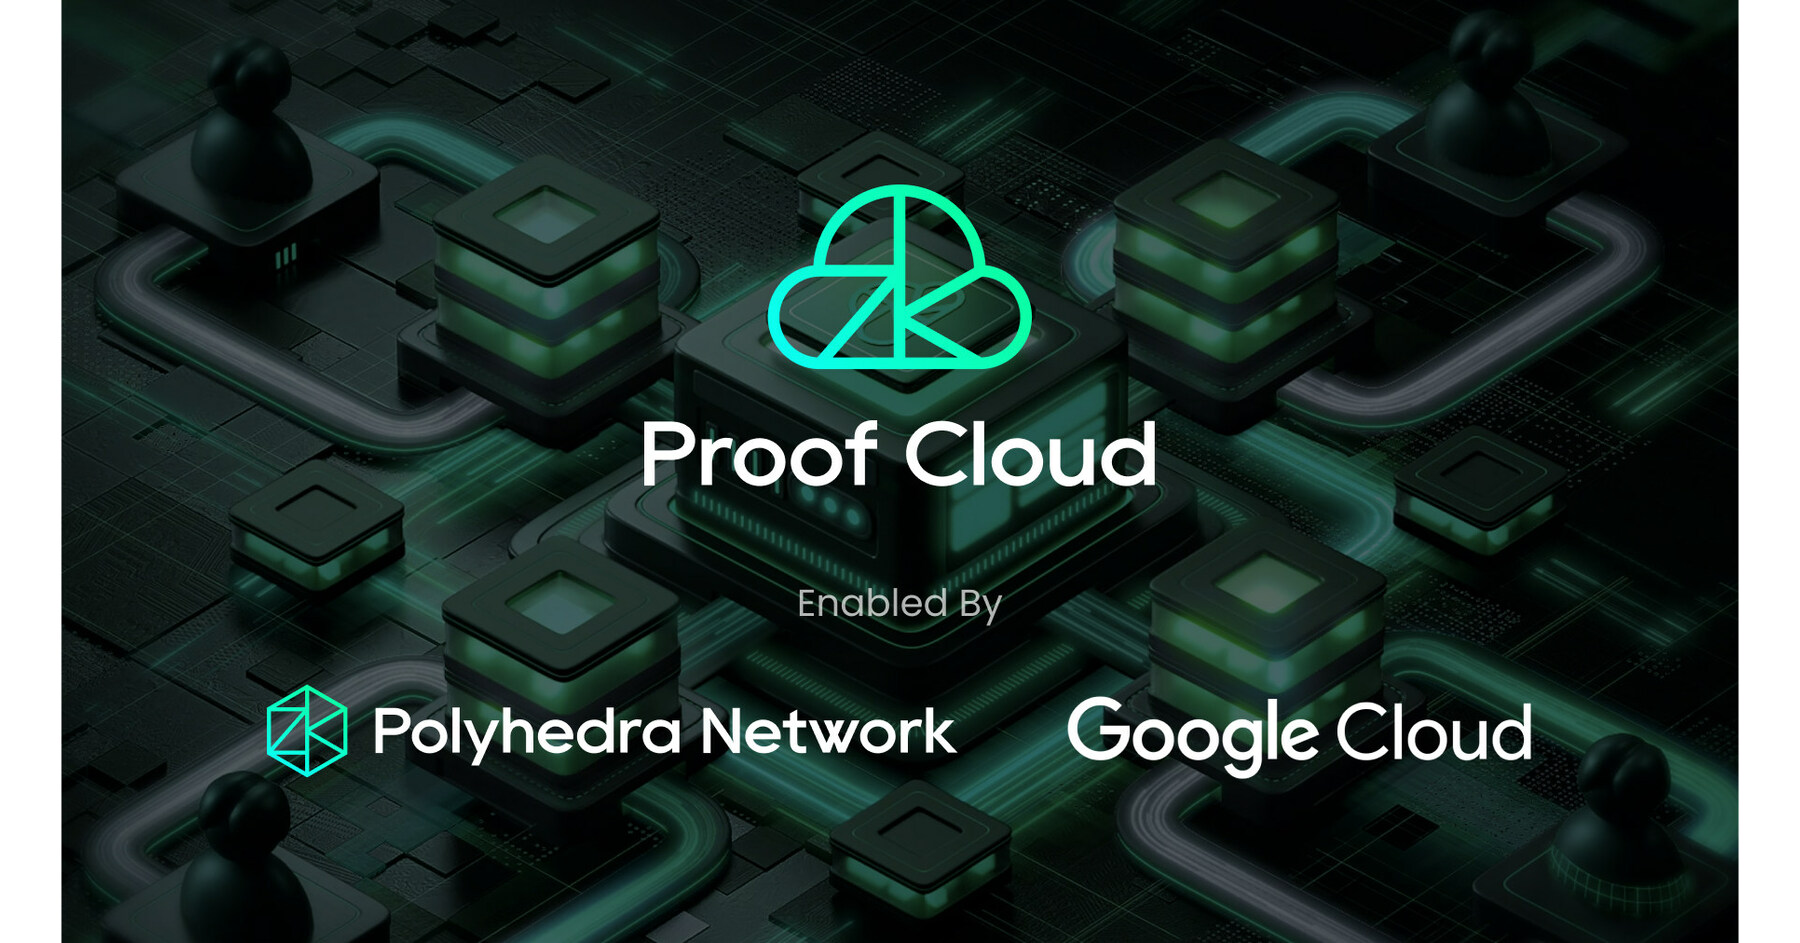 Polyhedra Netwok，谷歌云Tarafından Etkinleştirilen Proof Cloud ile ZK KanıtlarınıÖlçeklendiriyor